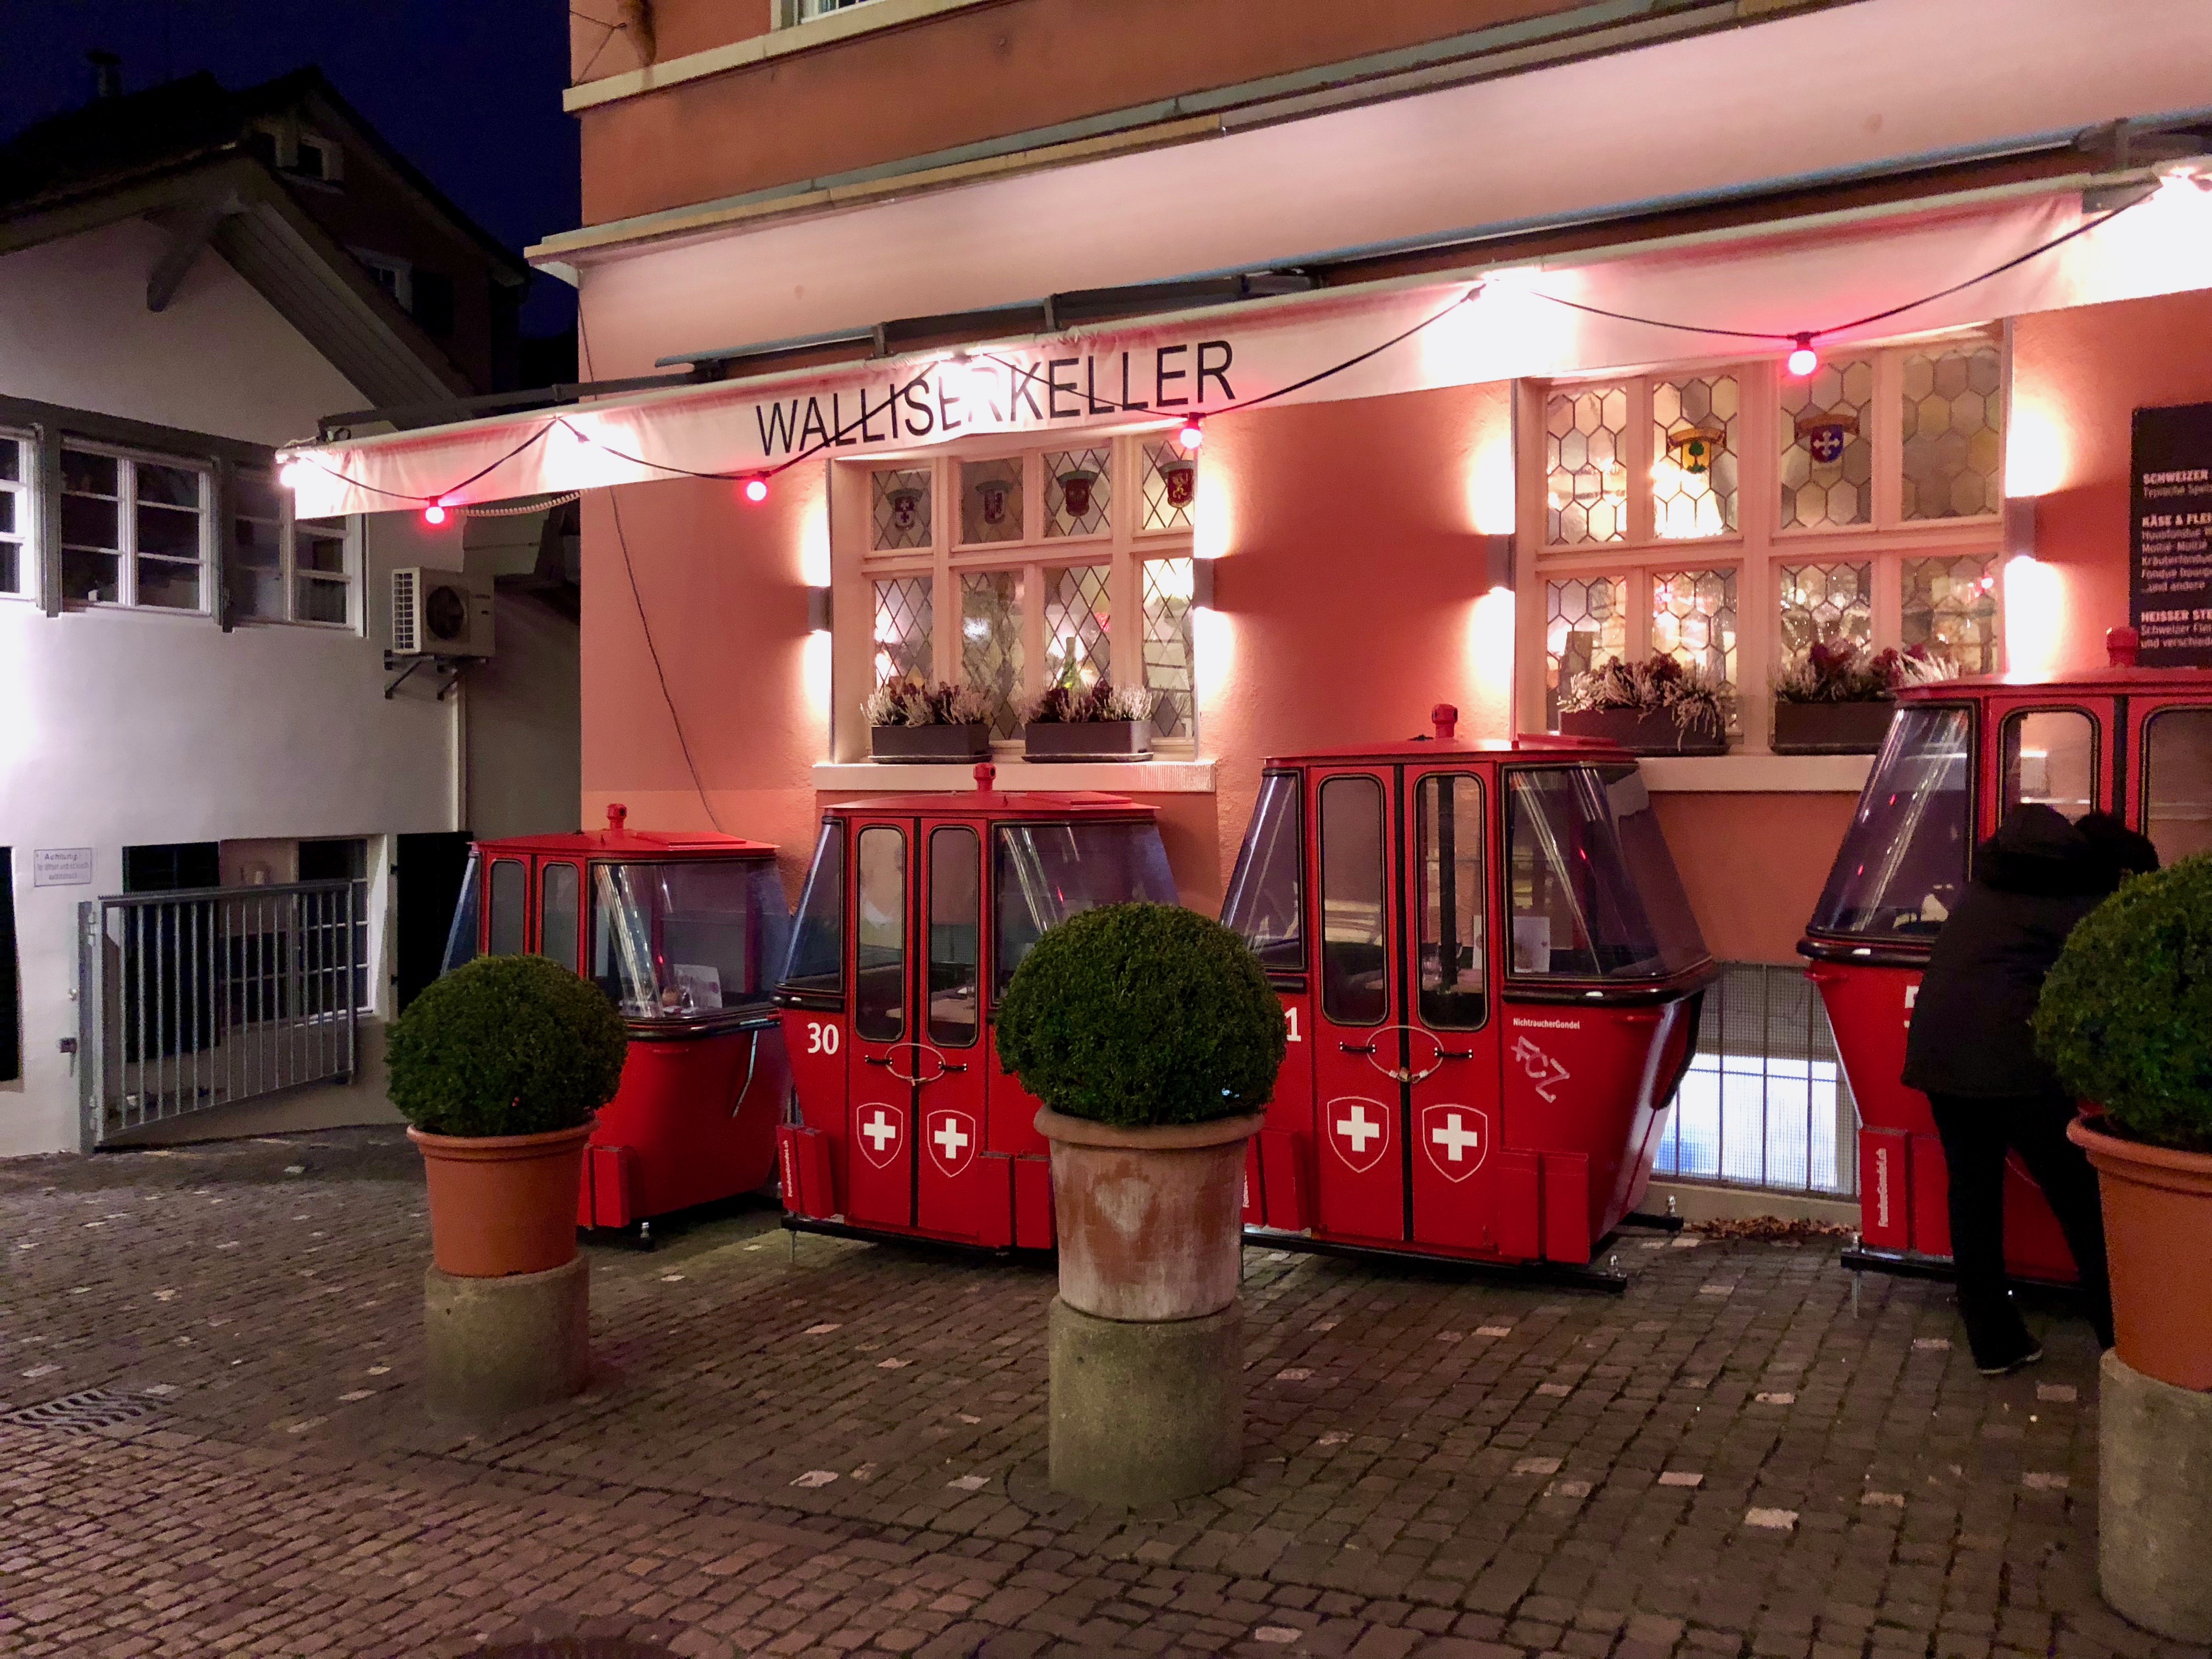 The gondolas in front of Walliser-Keller in Zurich, Switzerland.